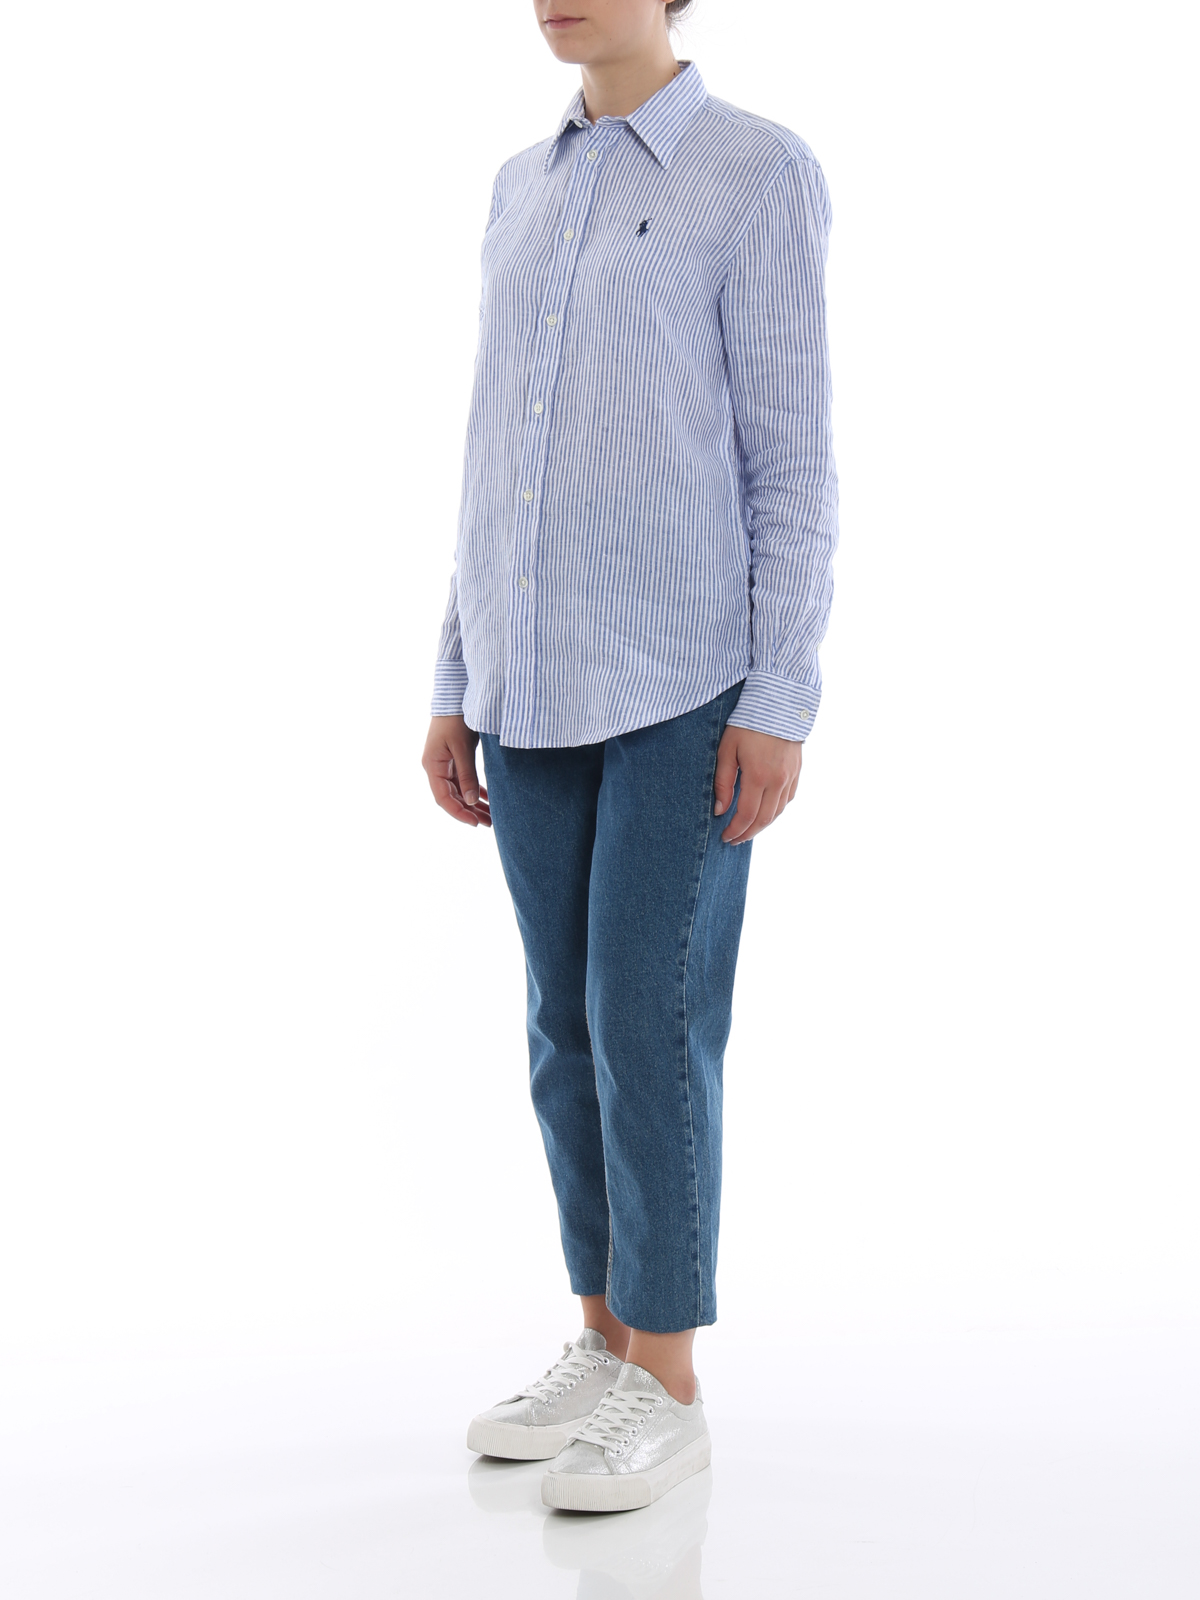 Shirts Polo Ralph Lauren - Relaxed fit striped linen shirt 